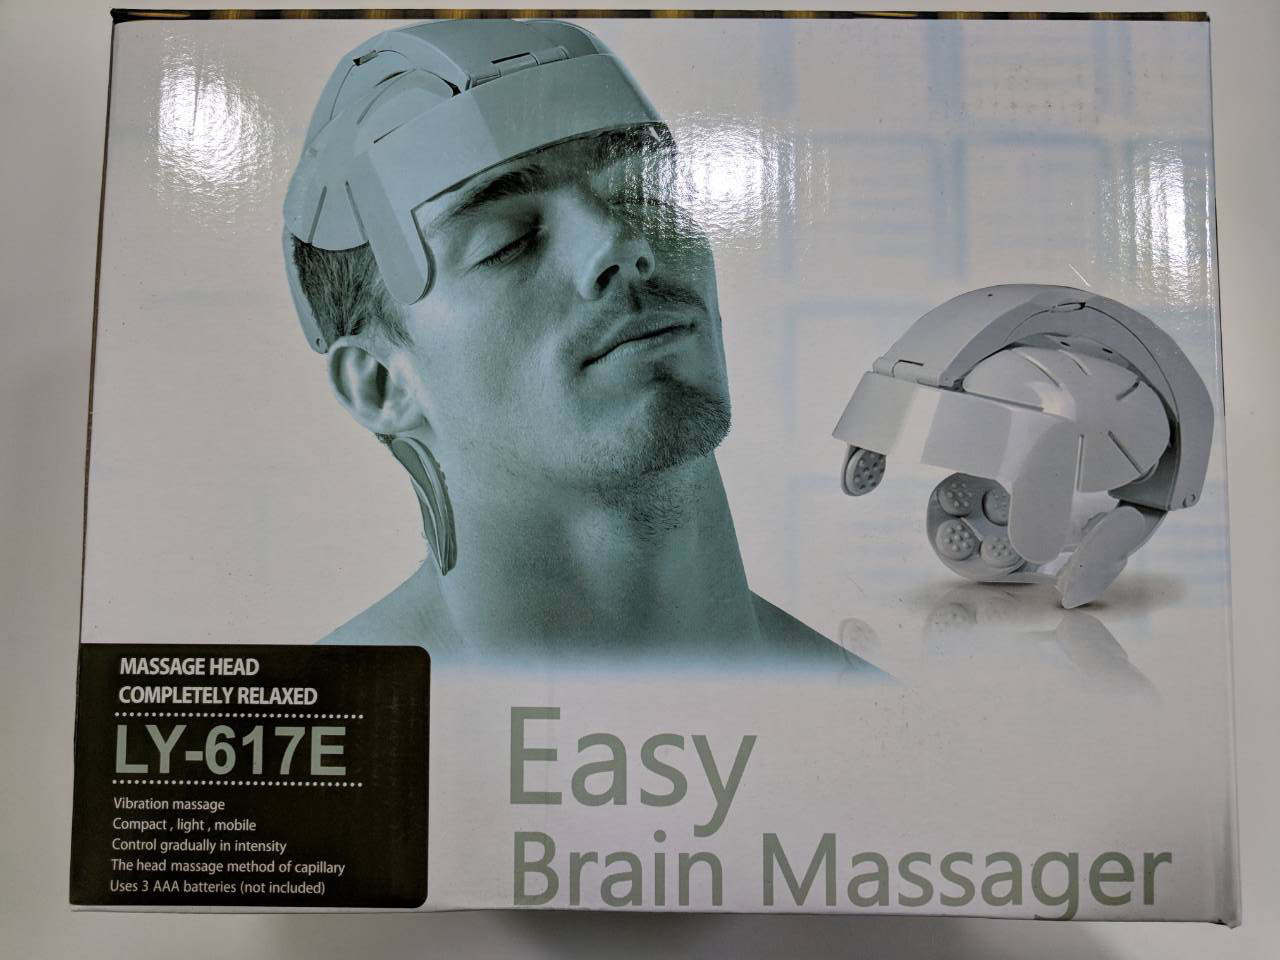 

Массажный шлем для головы массажер Easy Brain Massager LY-617E